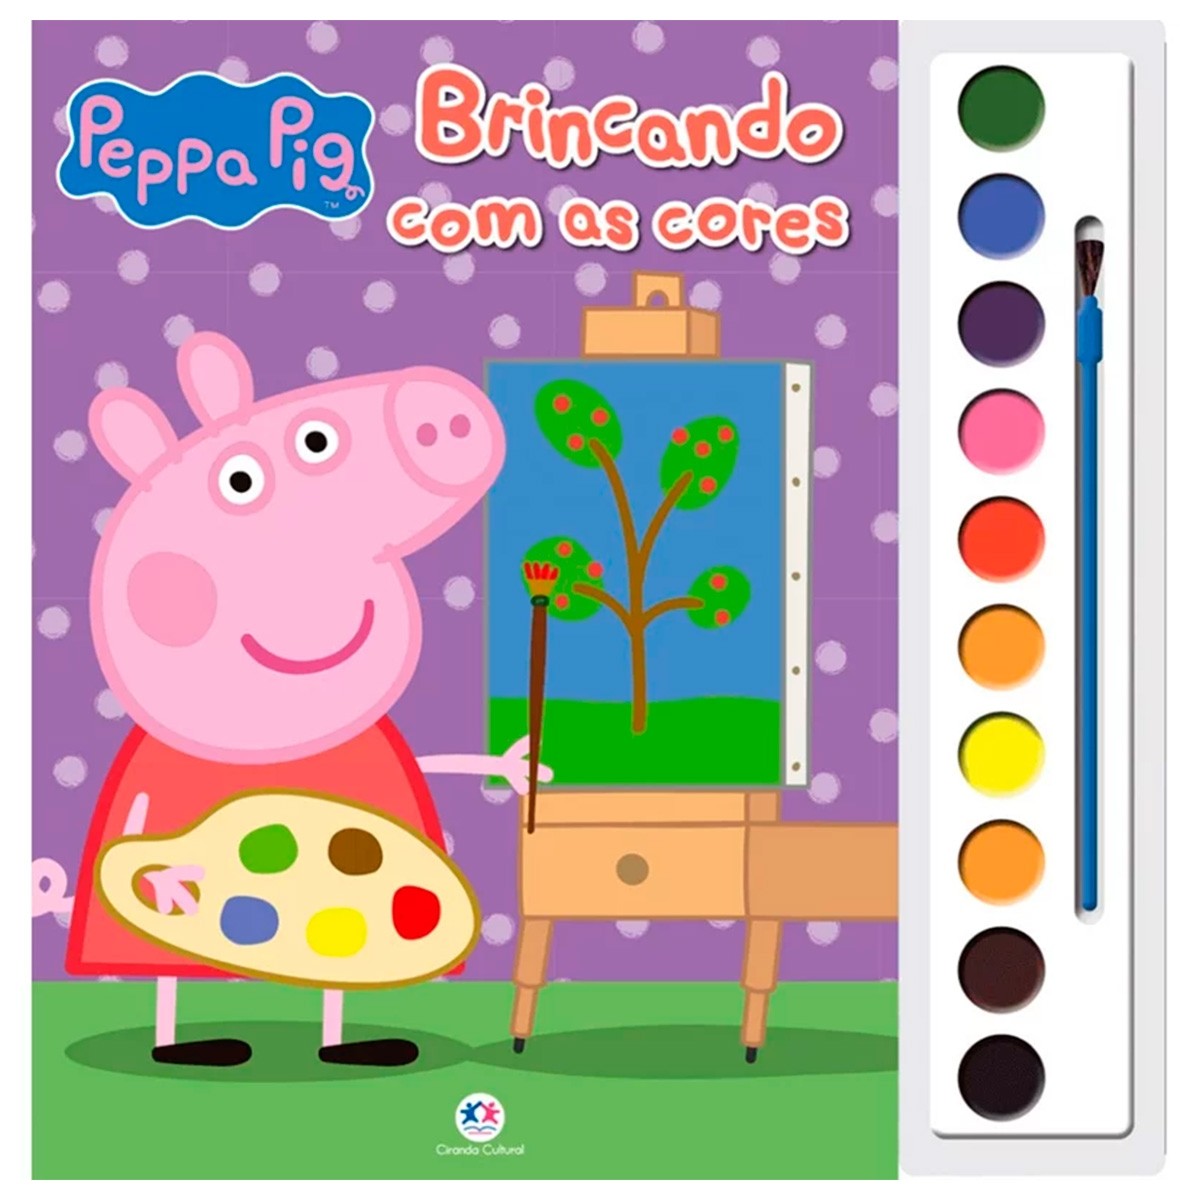 Livro - Peppa Pig - Meus Primeiros Desenhos - Editora Ciranda Cult